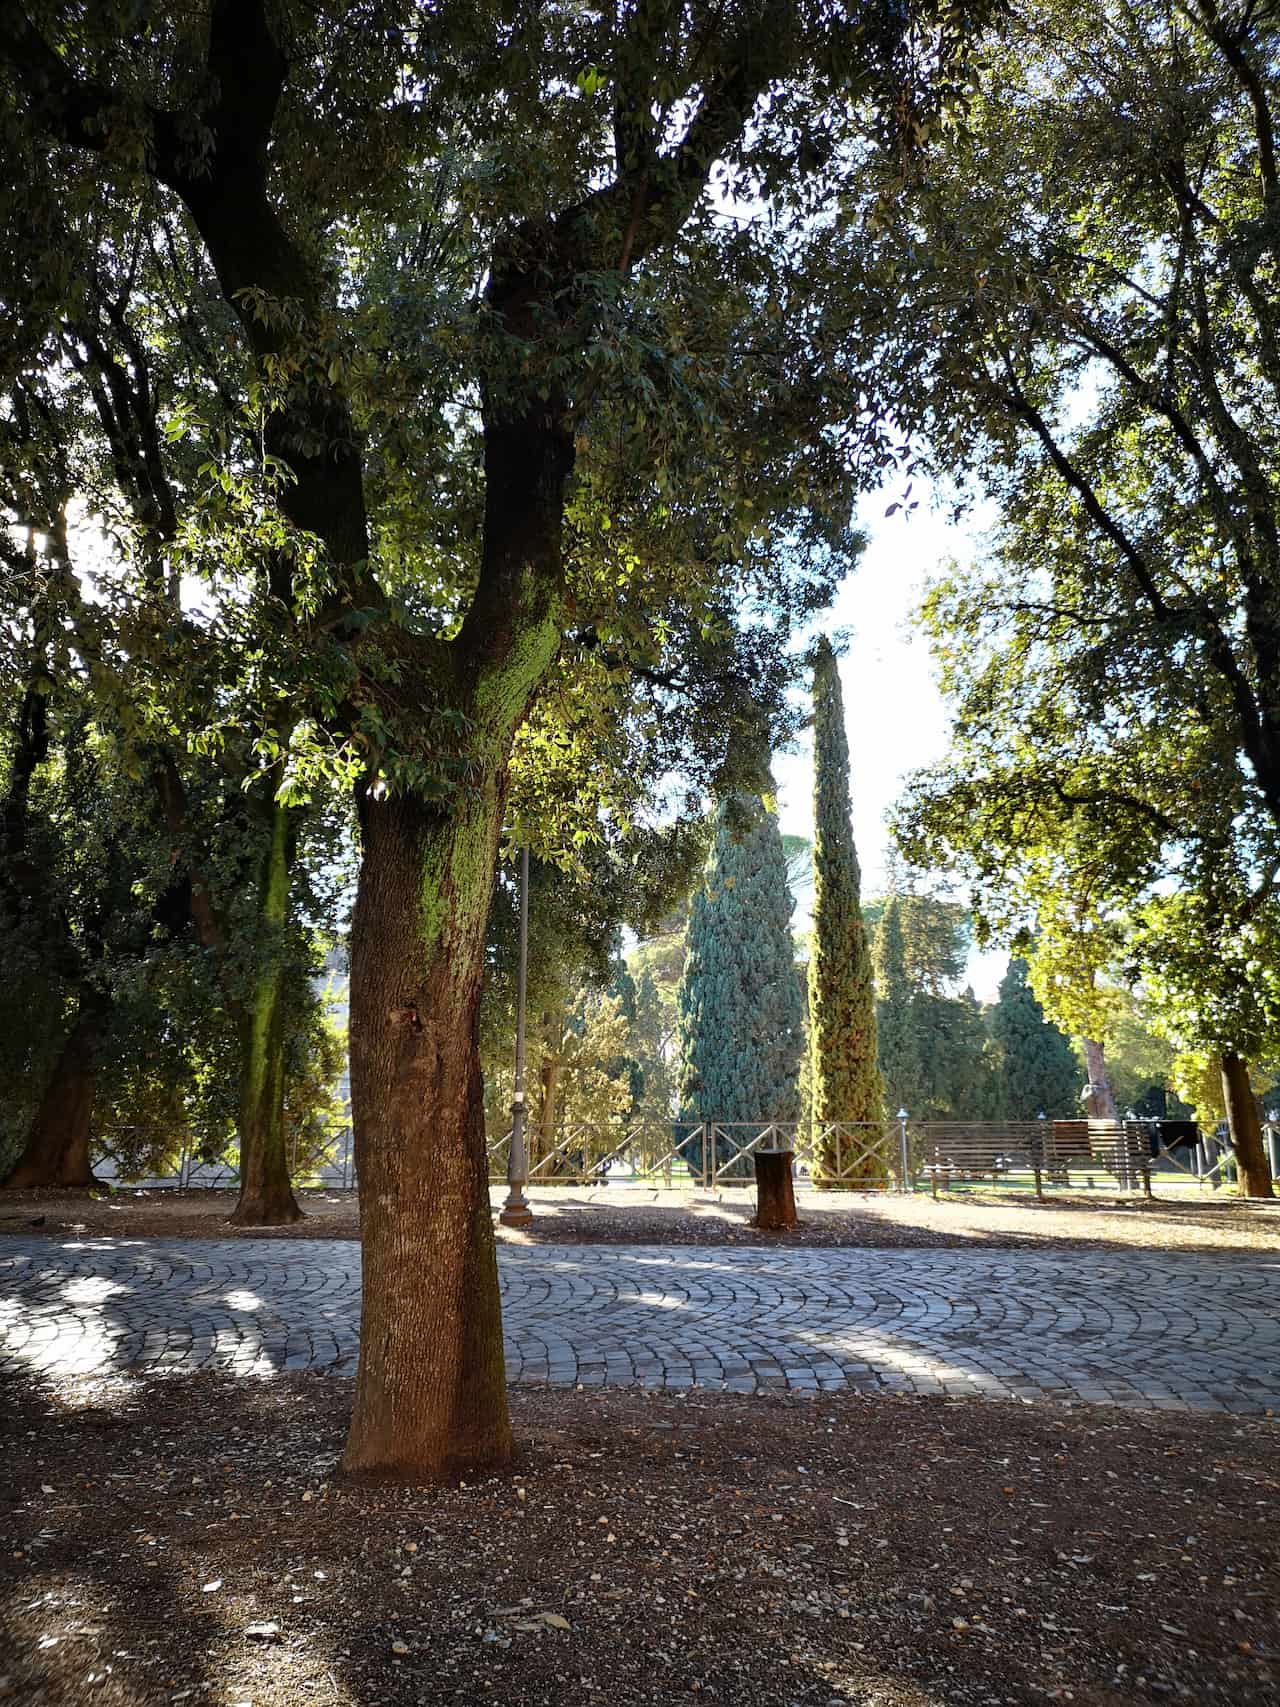 mole adriana park in rome